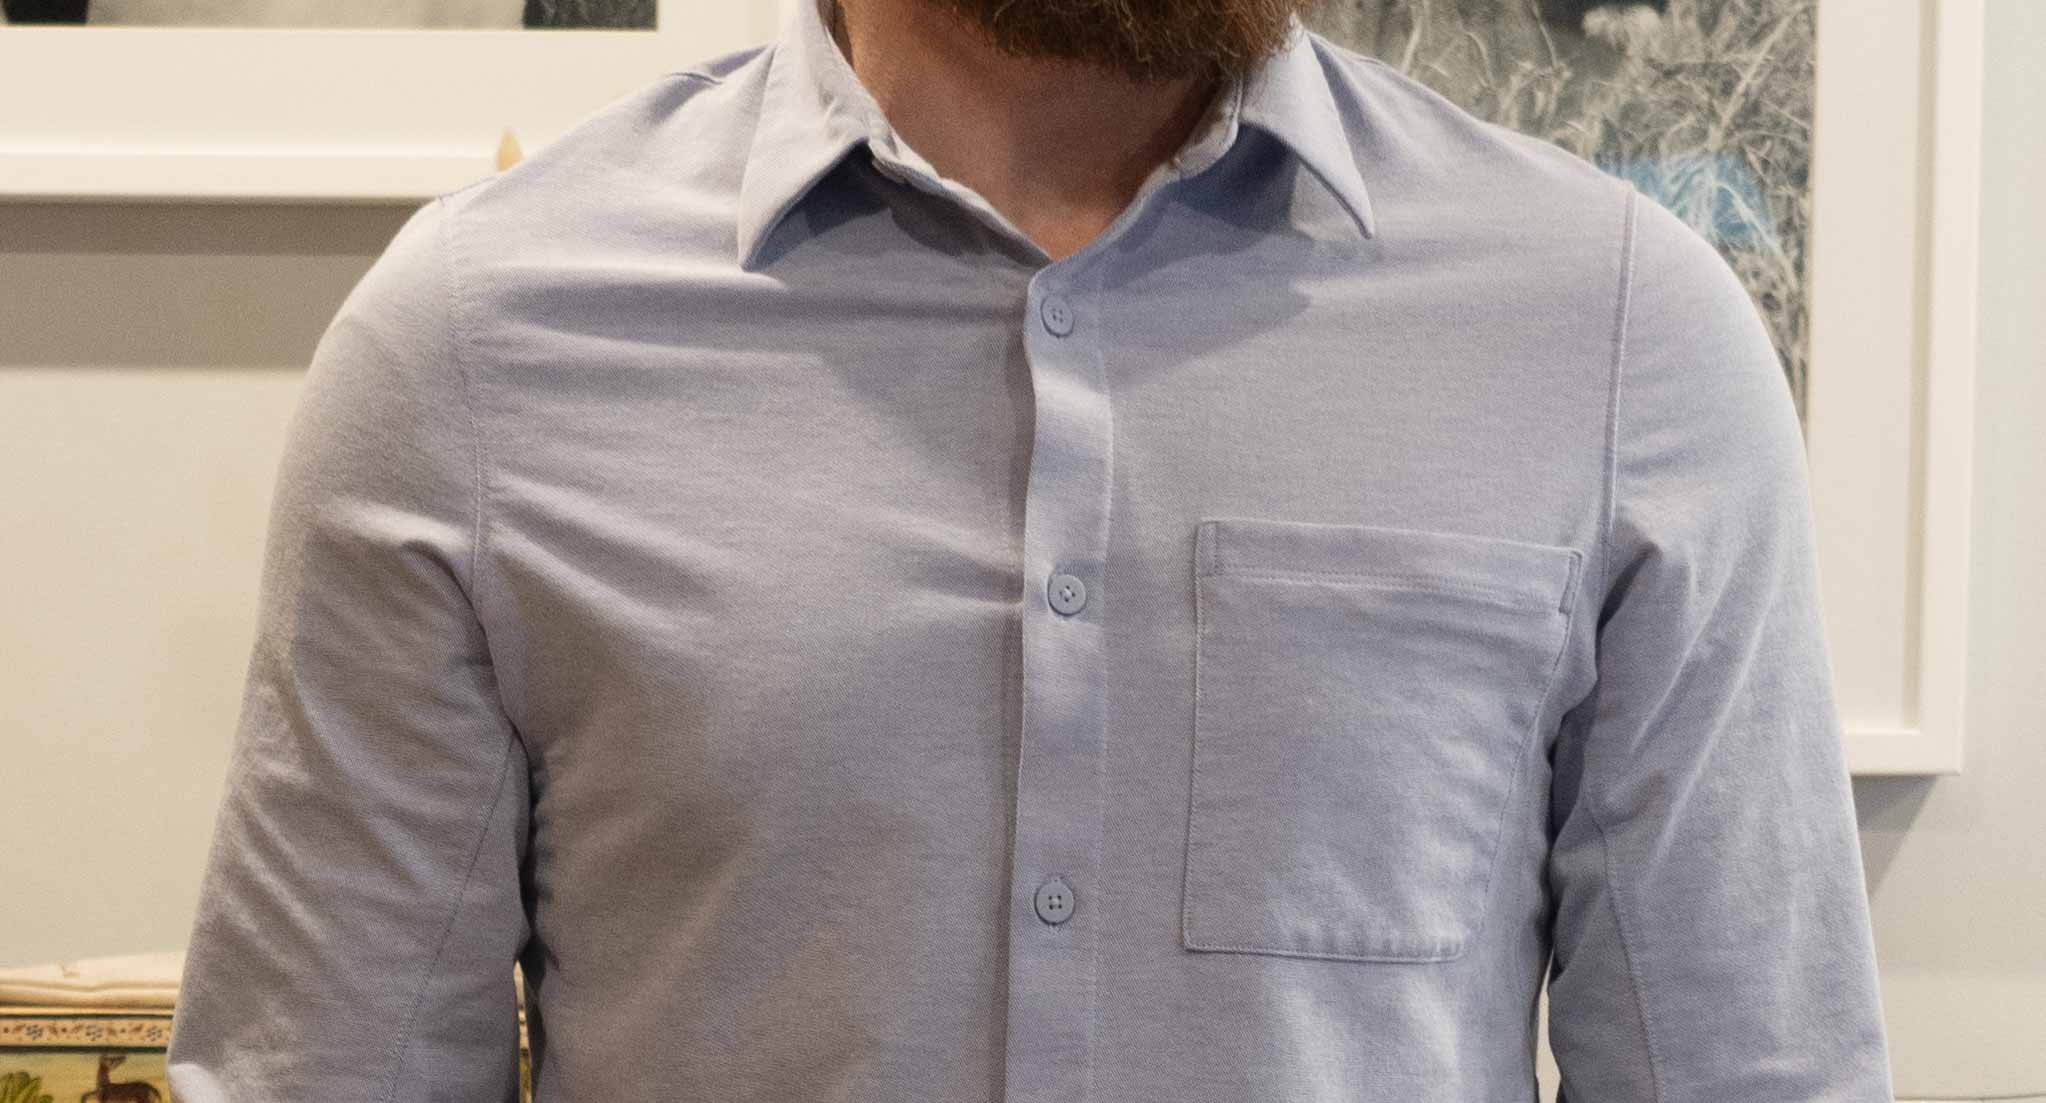 Lululemon Commission Long Sleeve Shirt